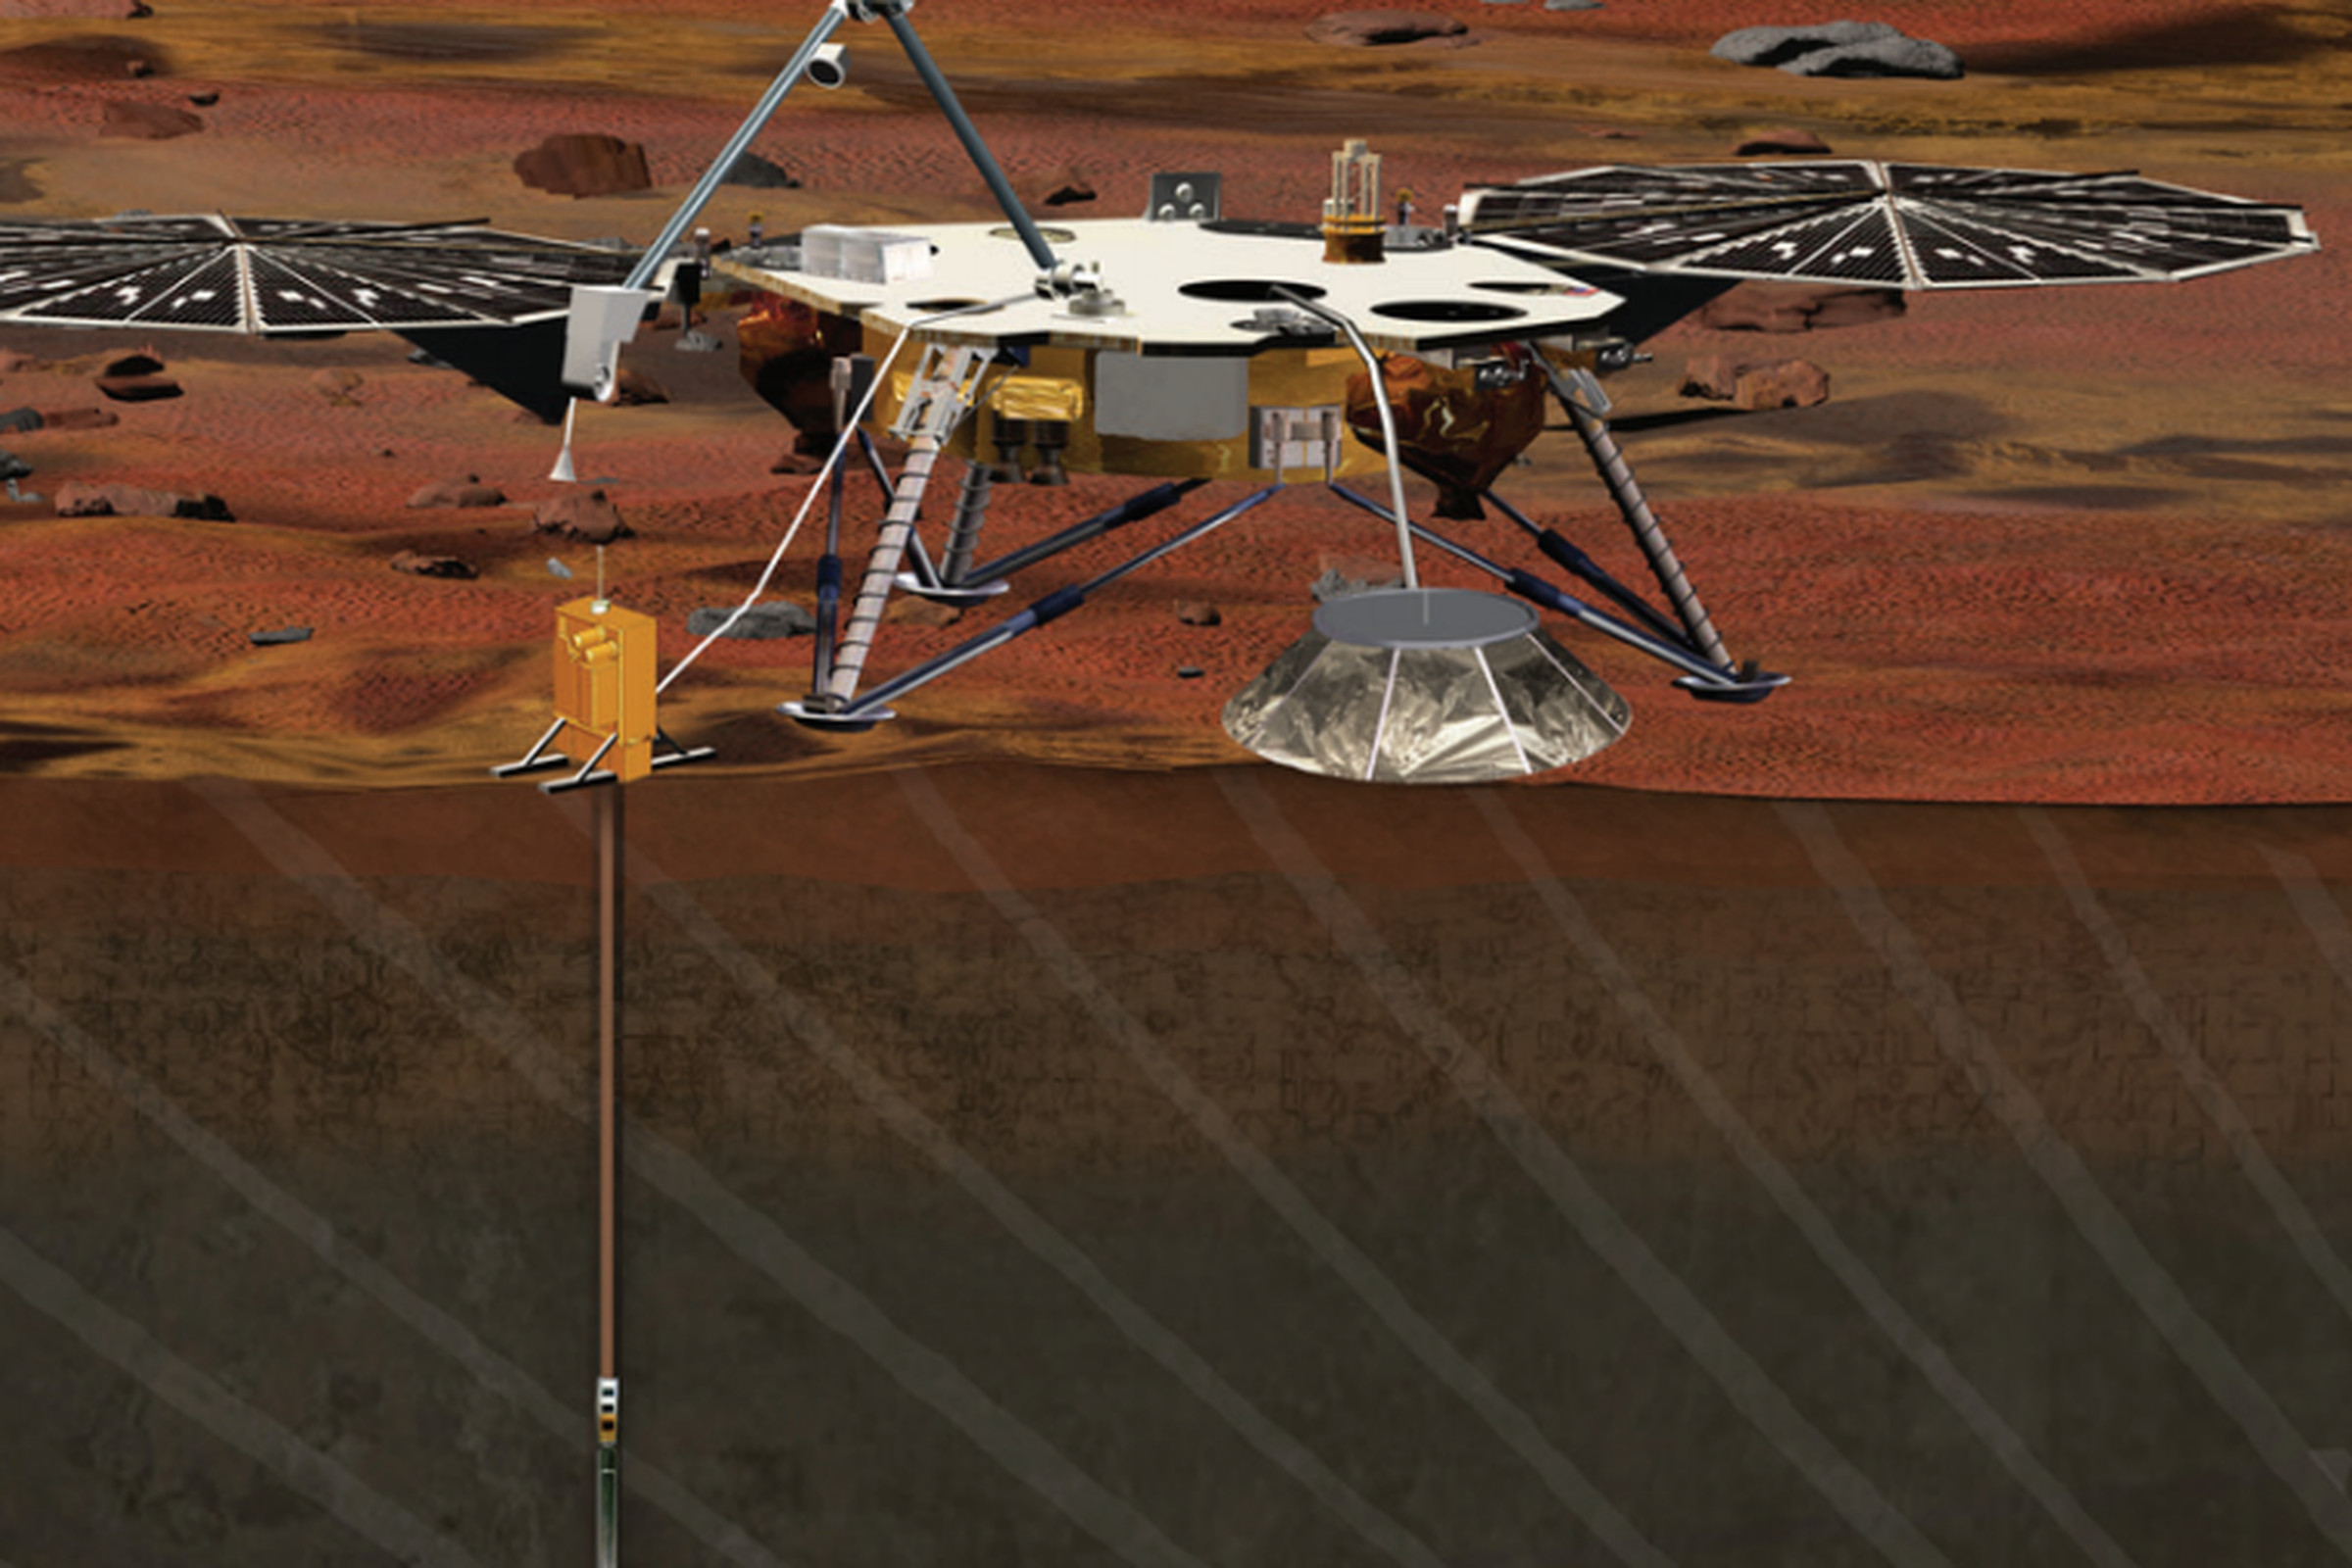 NASA Insight Rover